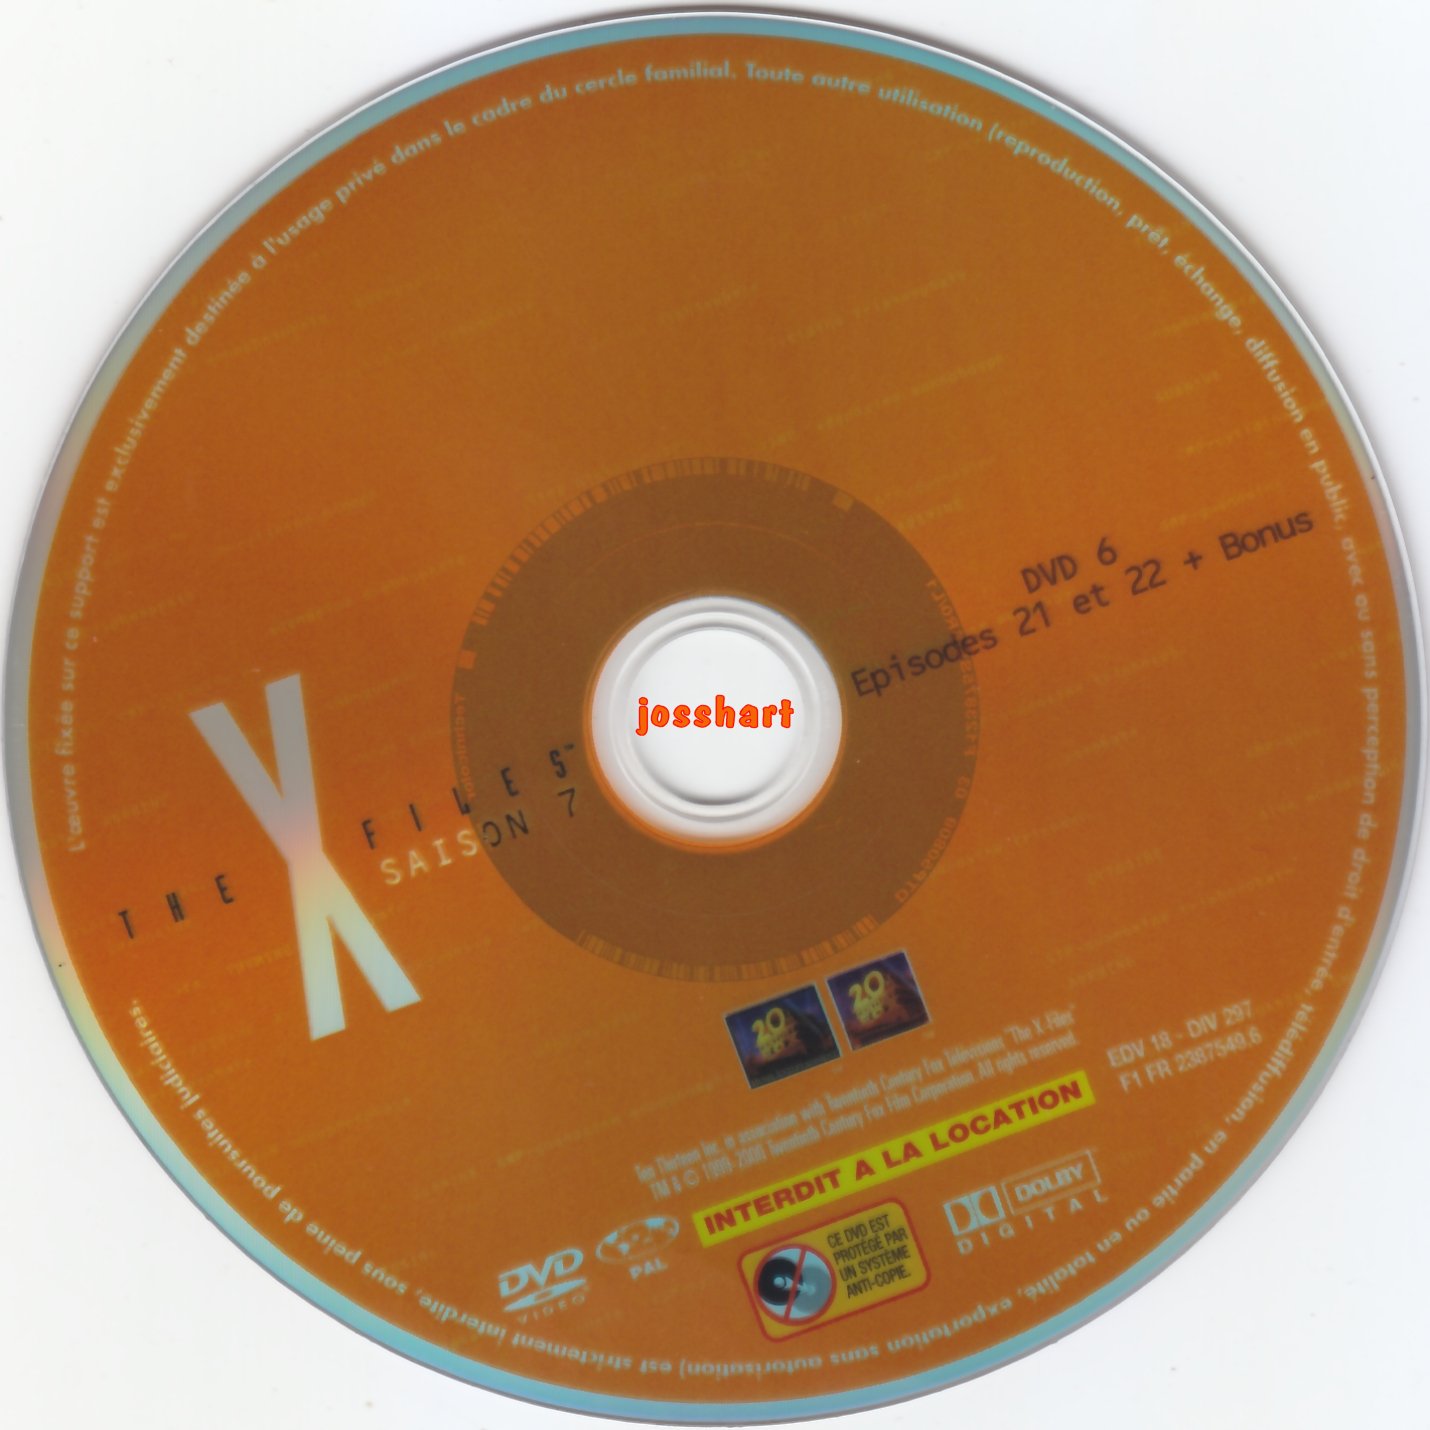 The X Files Saison 7 DVD 6 v2